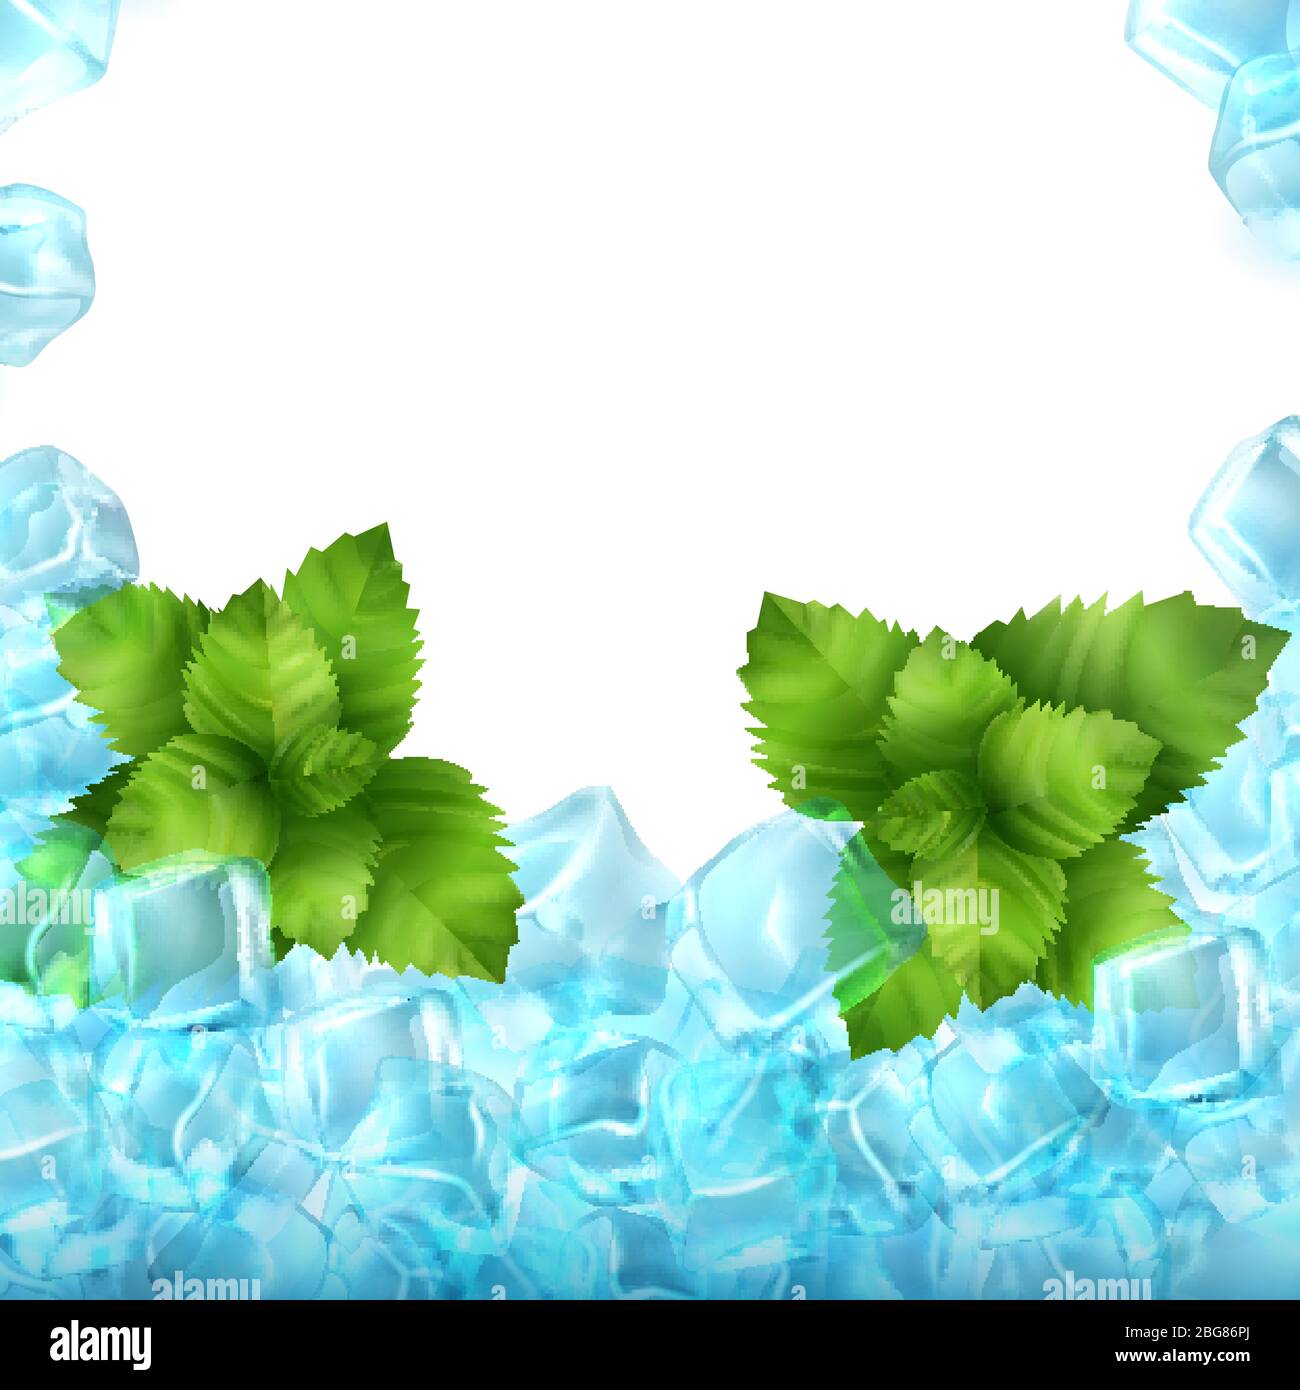 Realistische Eiswürfel und Minze auf weißem Hintergrund isoliert. Vektor-Lebensmittel und Getränke Anzeigen Vorlage Illustration Stock Vektor